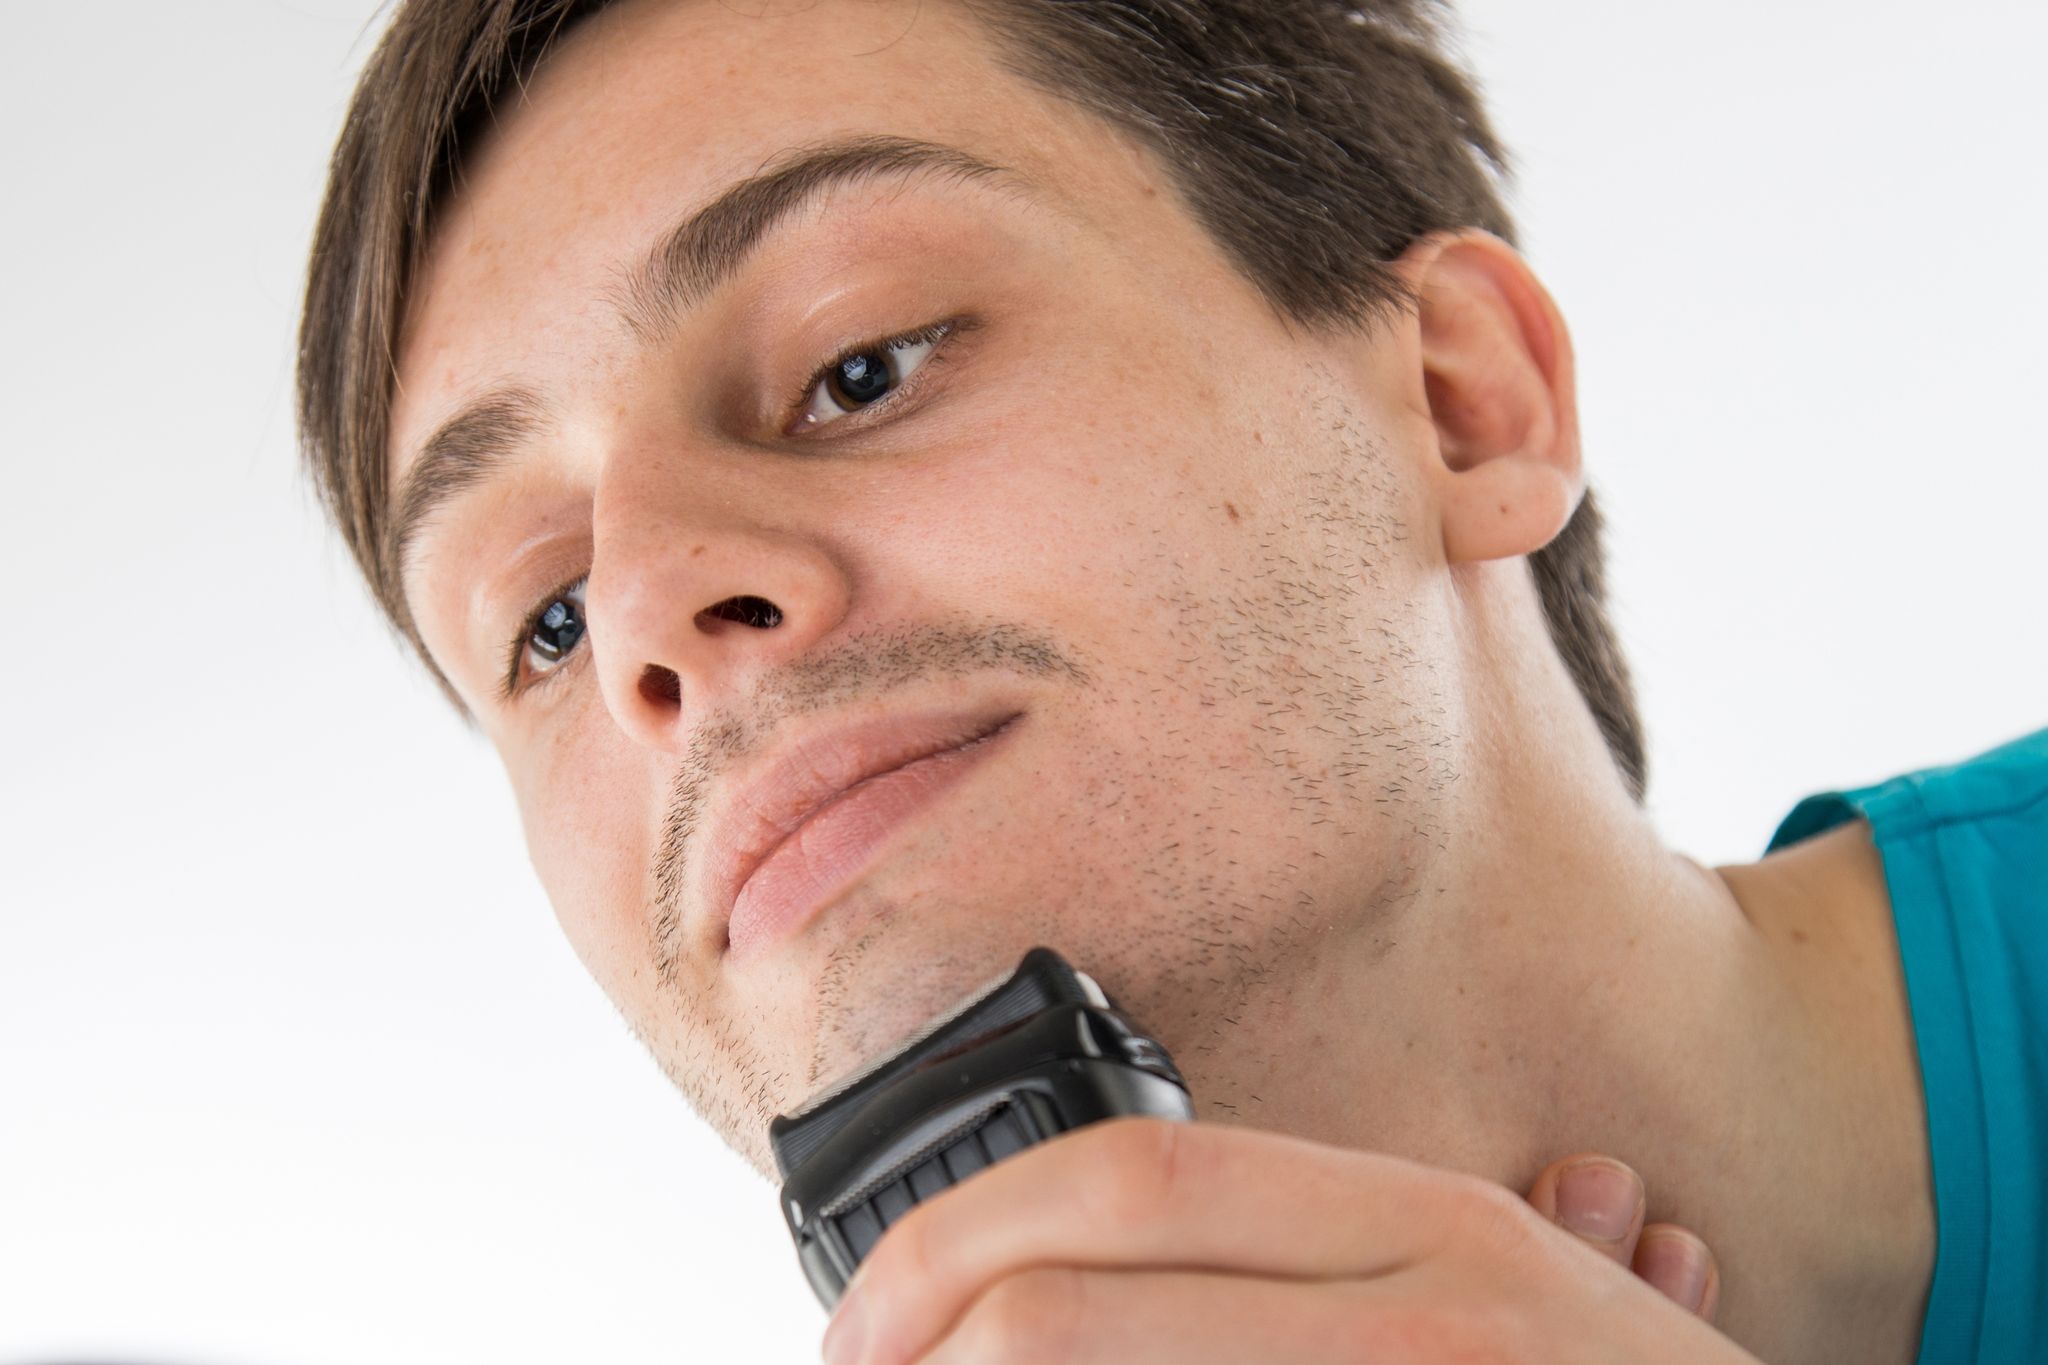 Acht von neun getesteten Geräten trimmen und stylen den Bart gut.